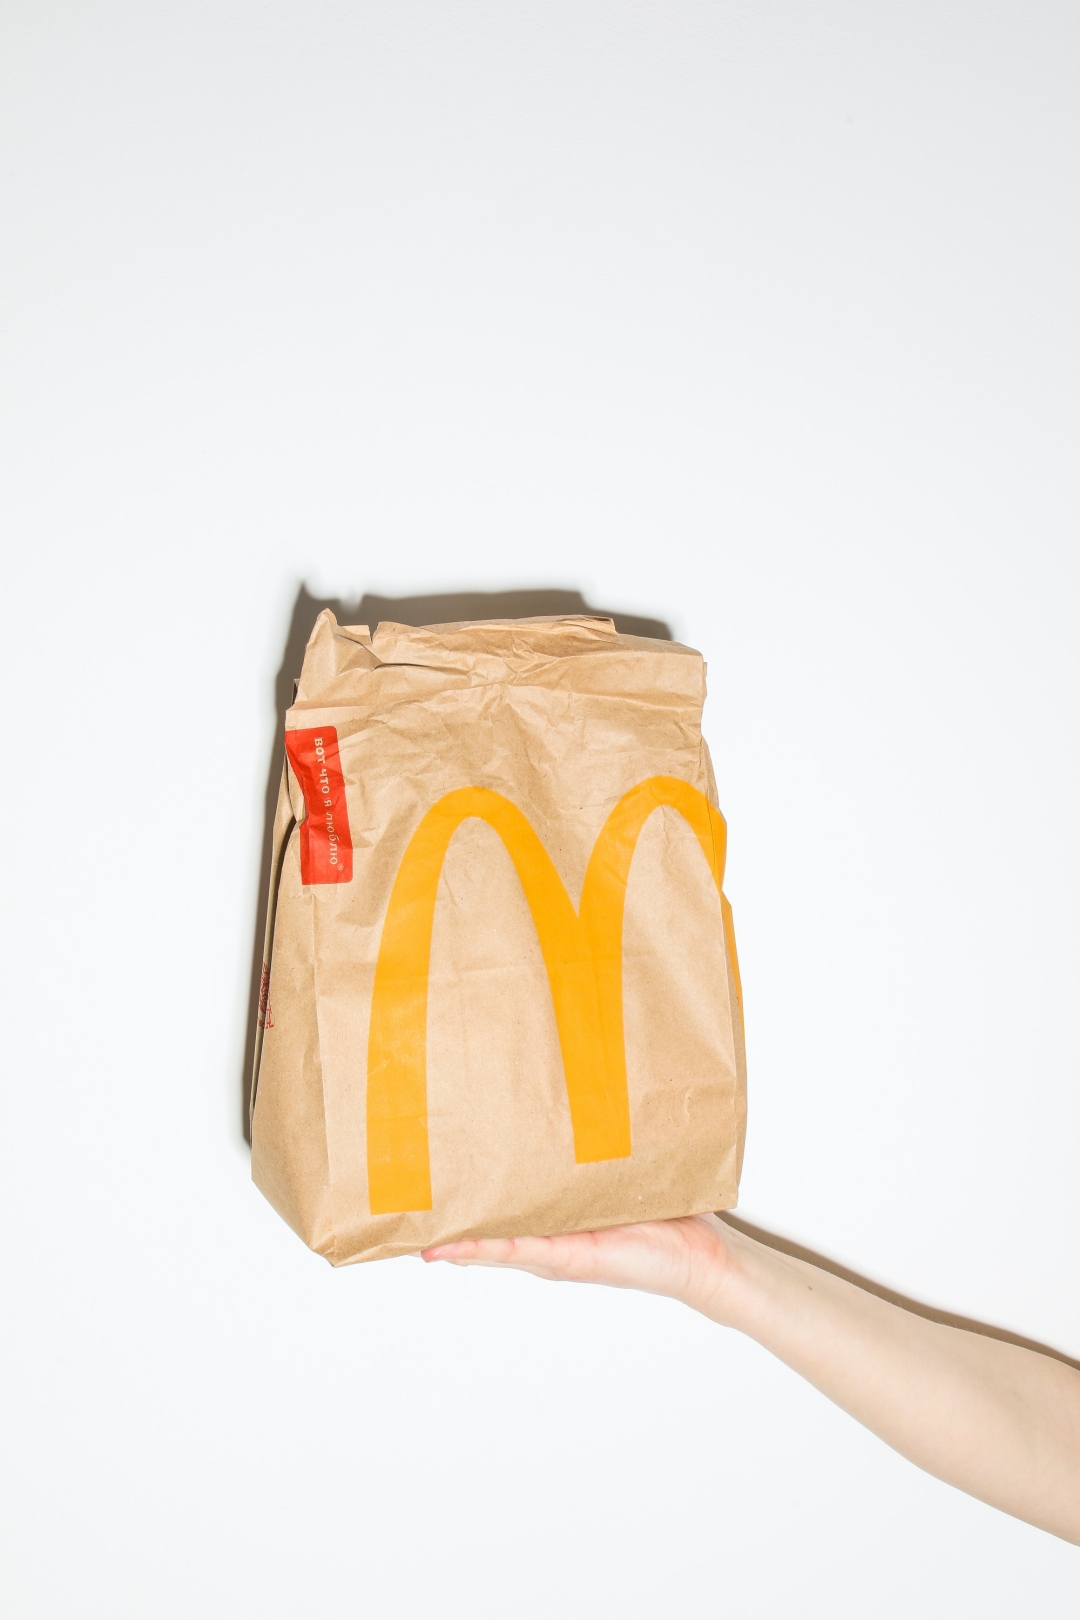 McDonalds je predstavio urnebesnu reklamu u kojoj smo se i sami prepoznali